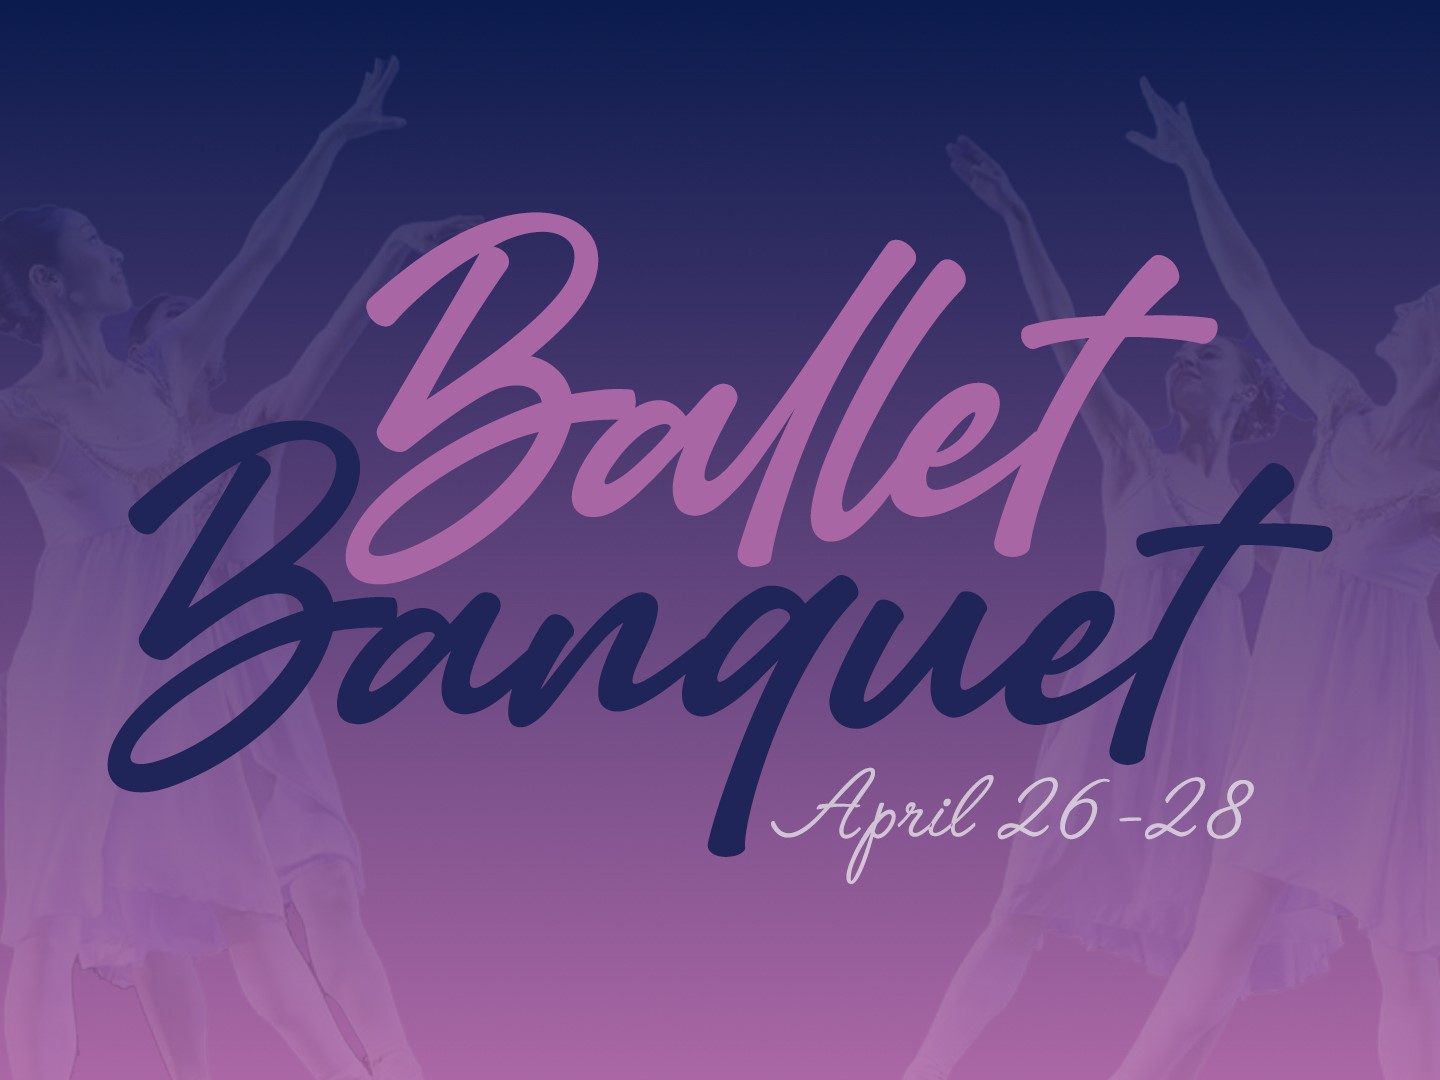 Ballet Banquet poster